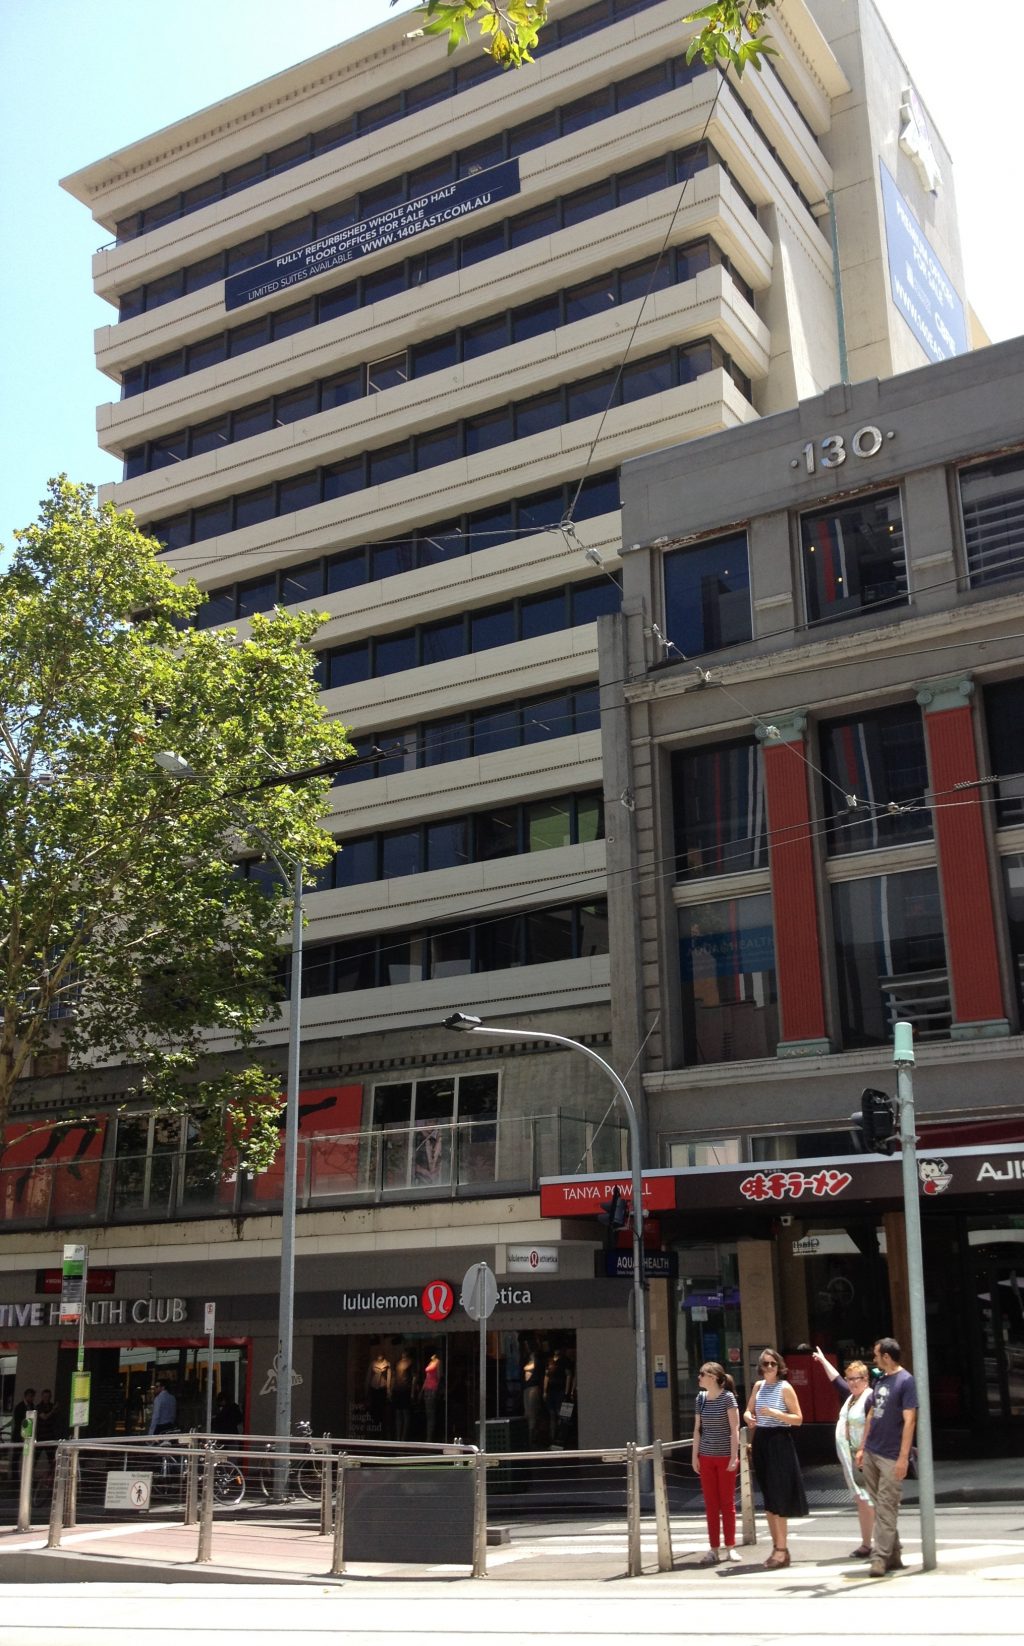 Former Hoyts Cinema Building, 140 Bourke Street, Melbourne